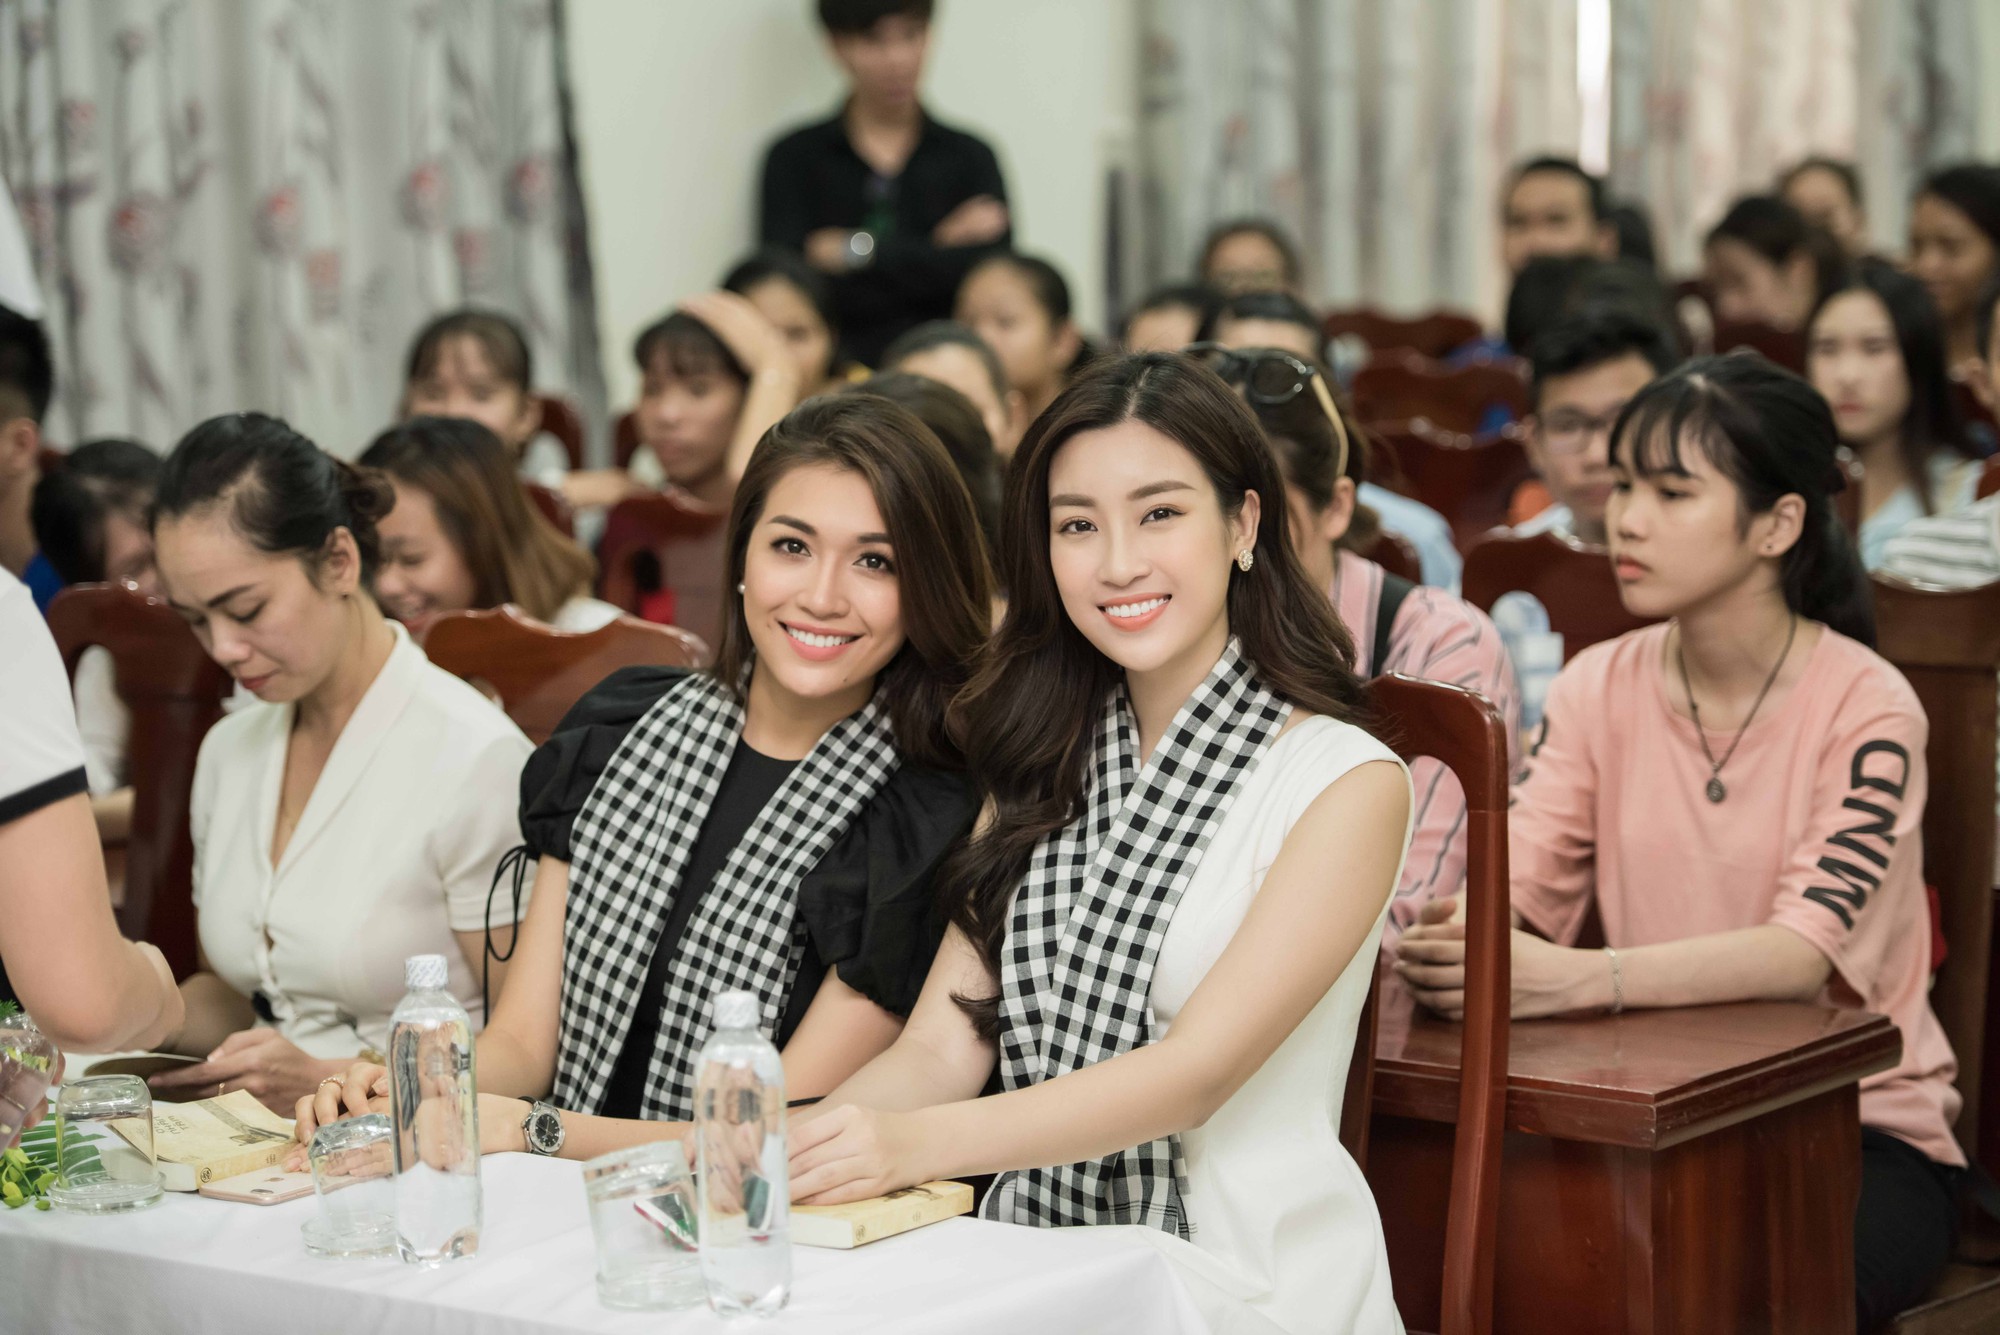 Hoa hậu Đỗ Mỹ Linh khoe dáng cùng Á hậu Thùy Dung bên siêu xe 50 tỷ đồng - Ảnh 4.